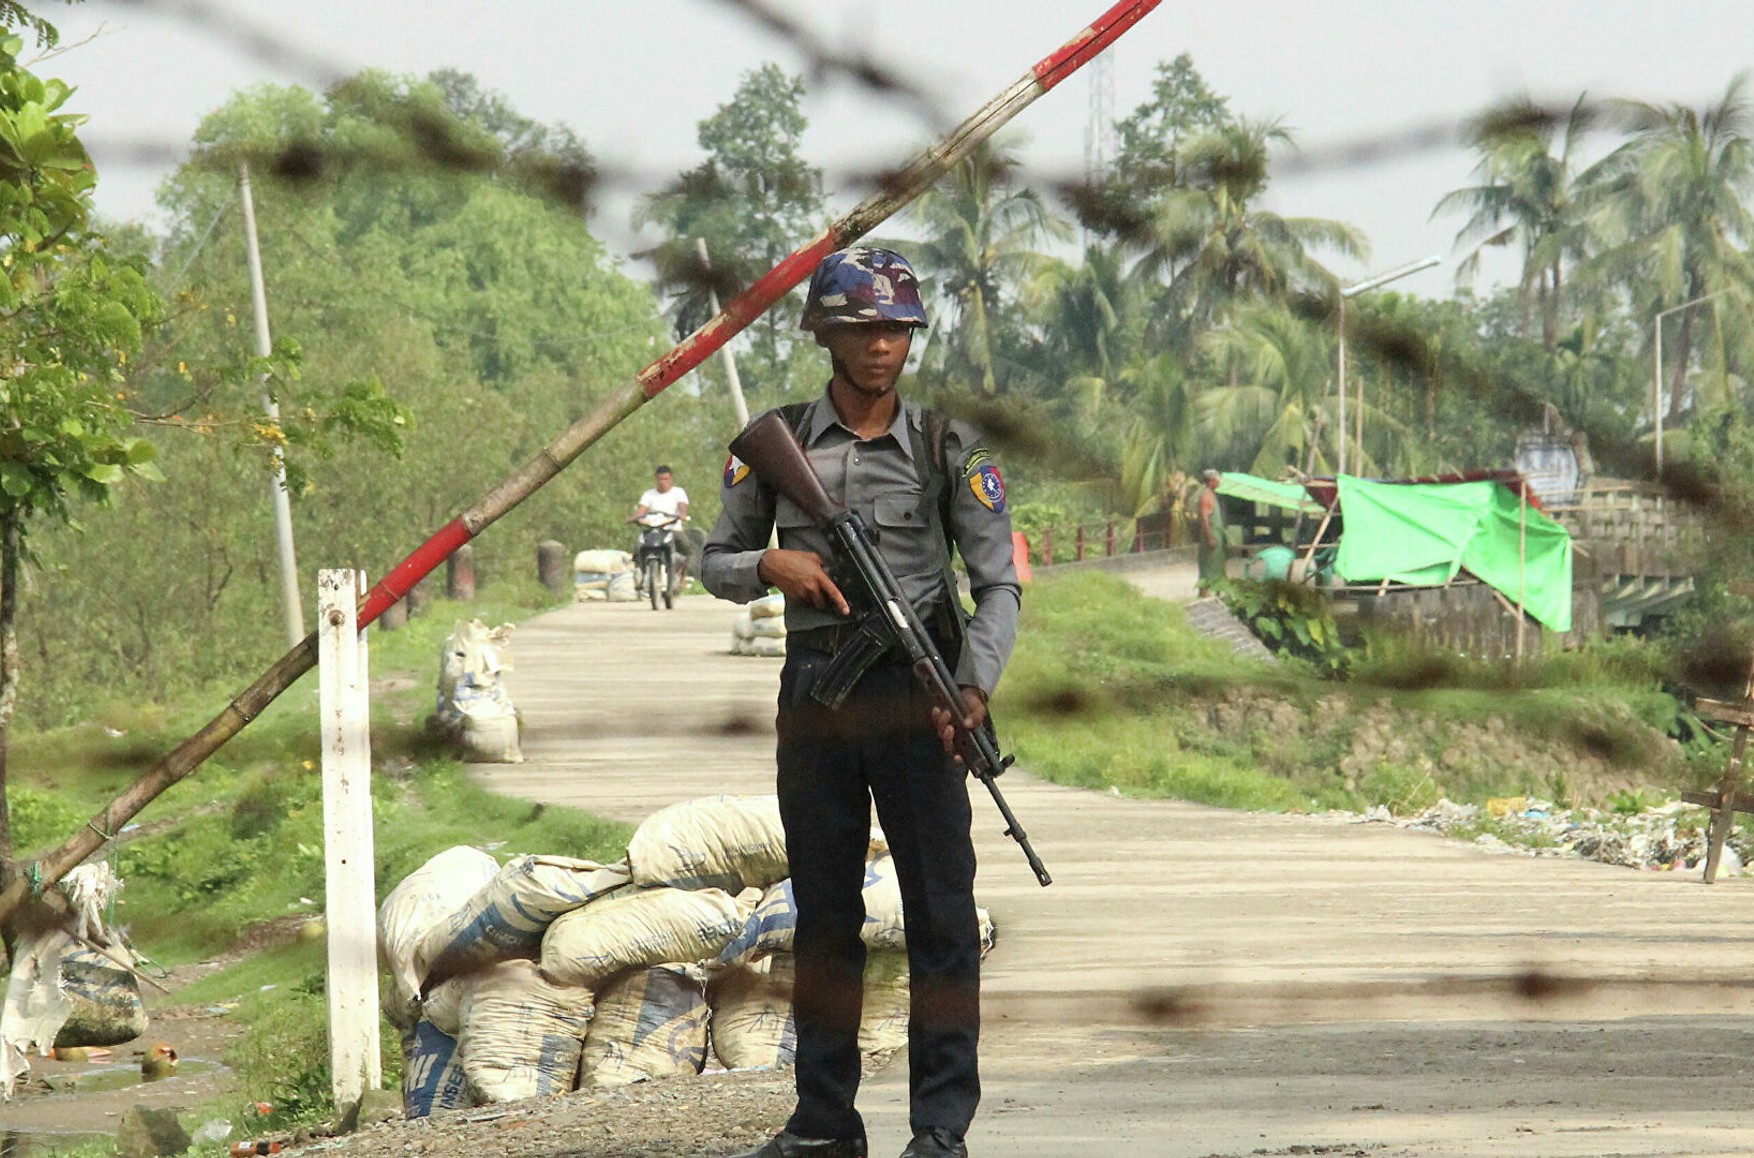 Глави генштабів 12 країн зажадали припинити насильство в М'янмі, де в ході протестів військовими було вбито понад 100 осіб